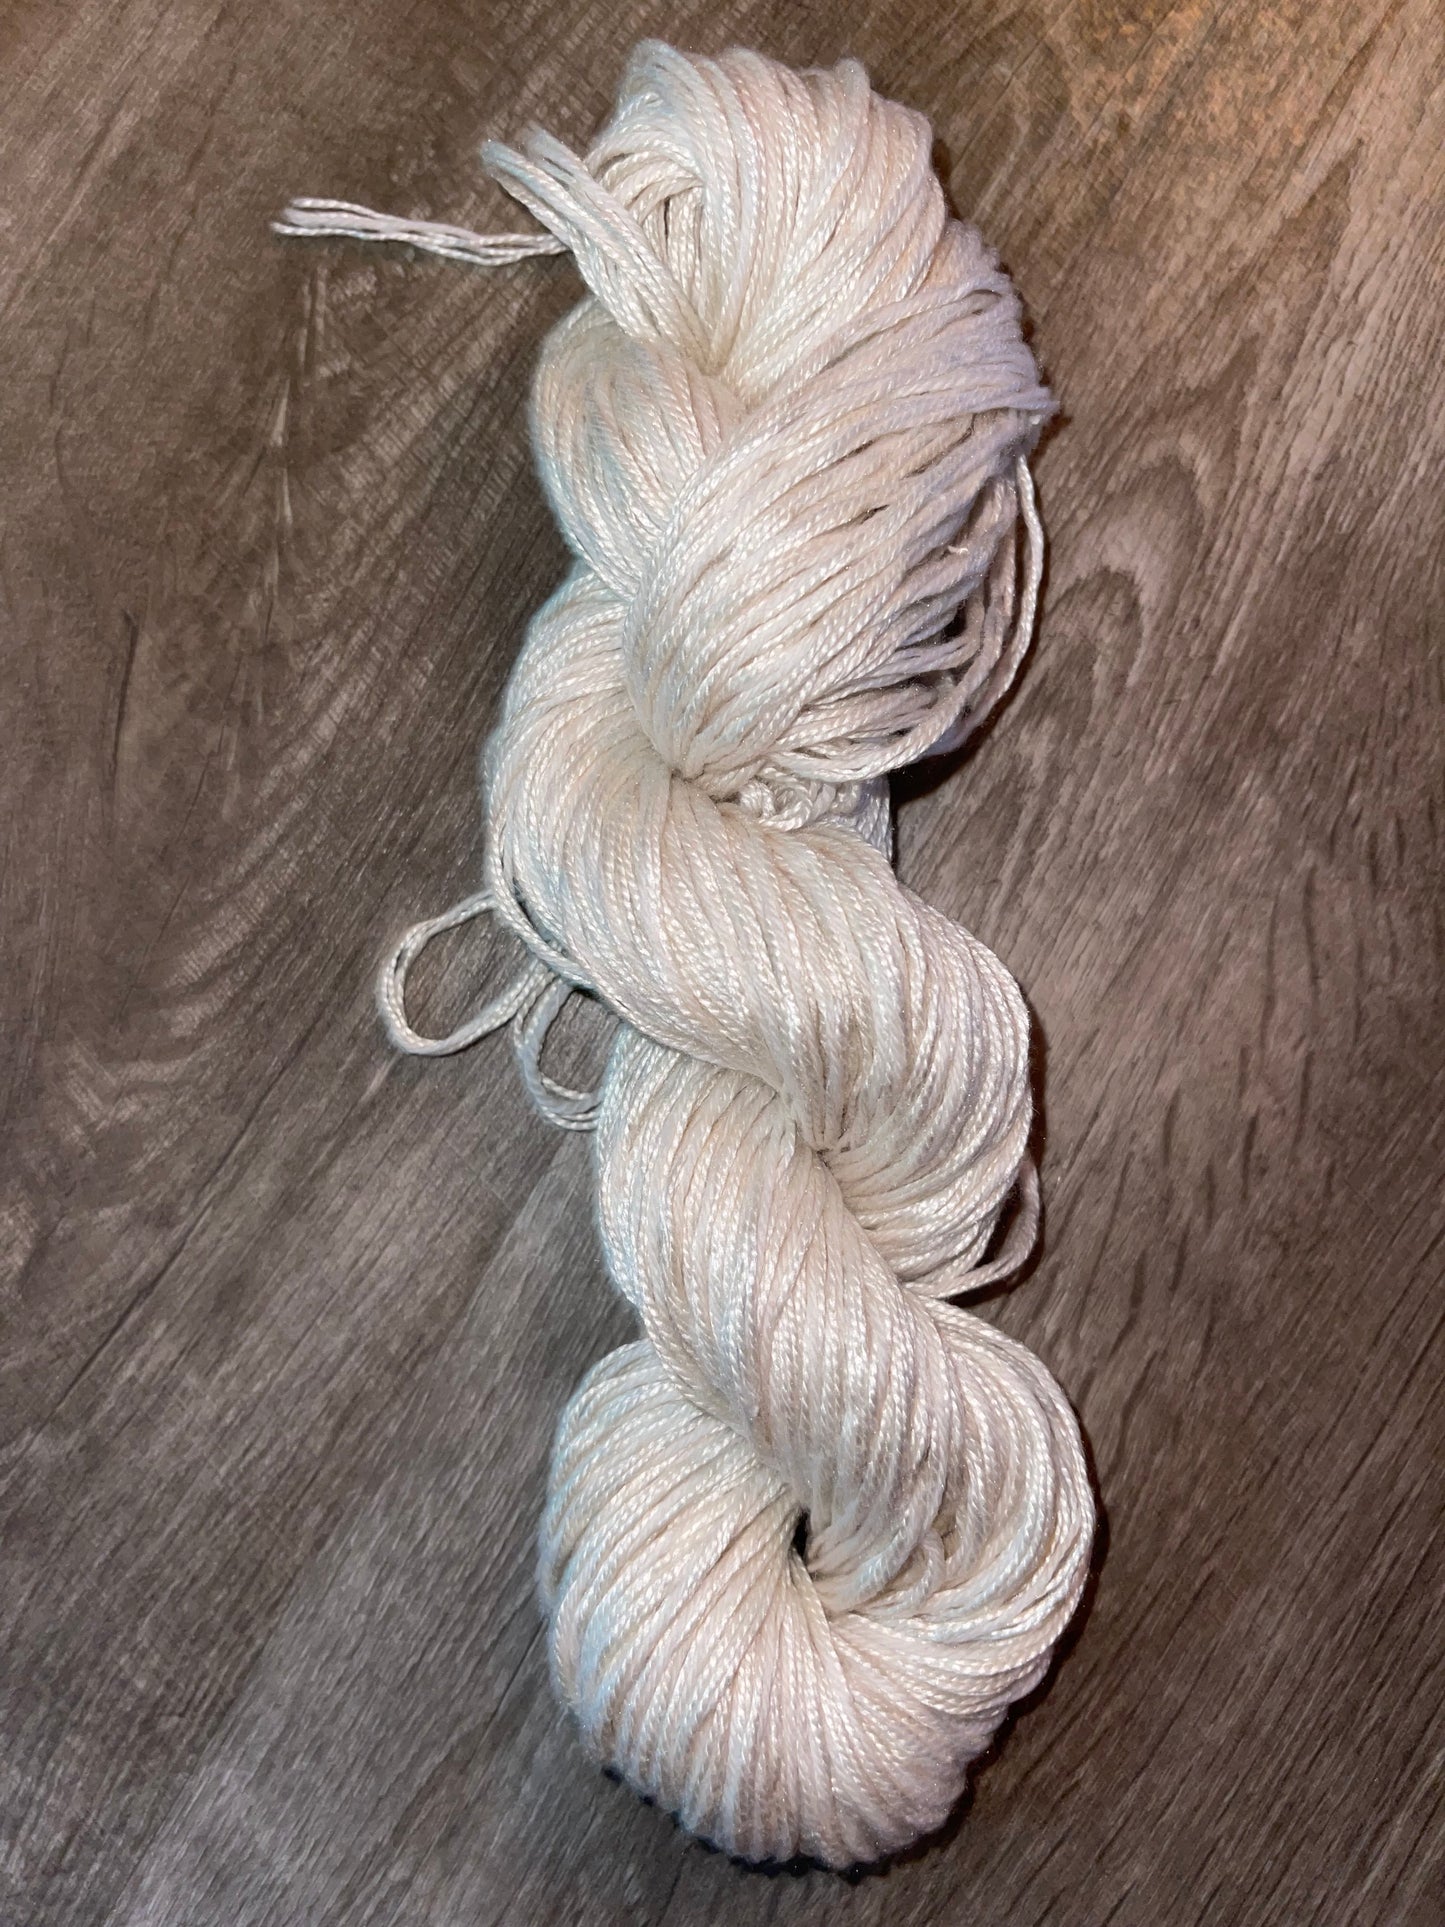 Italian silk cashmere merino MULTI strand creamy white